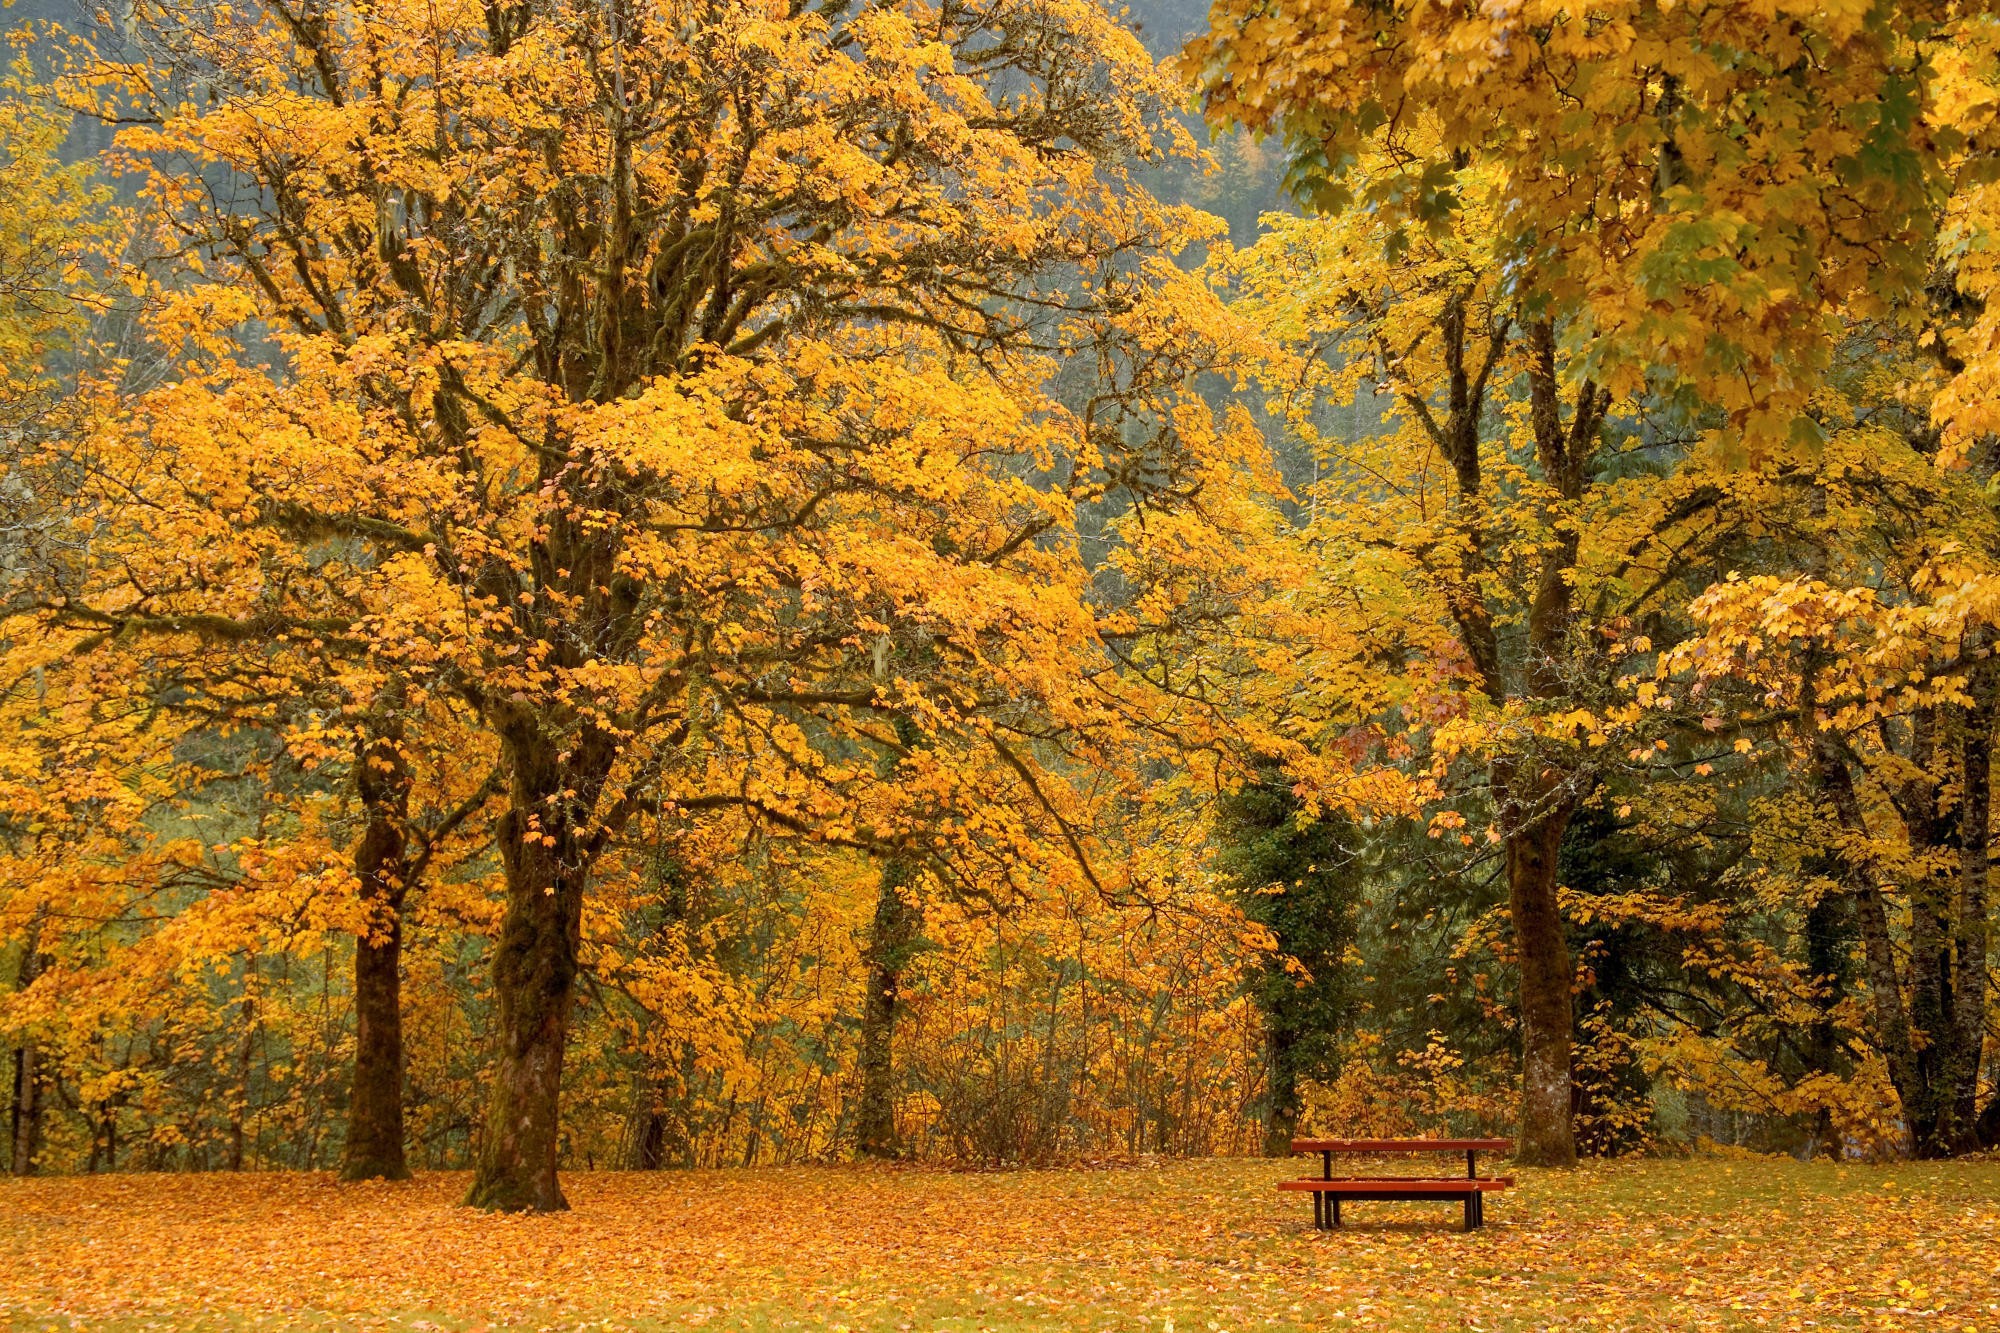 General 2000x1333 fall oak trees yellow bench fallen leaves